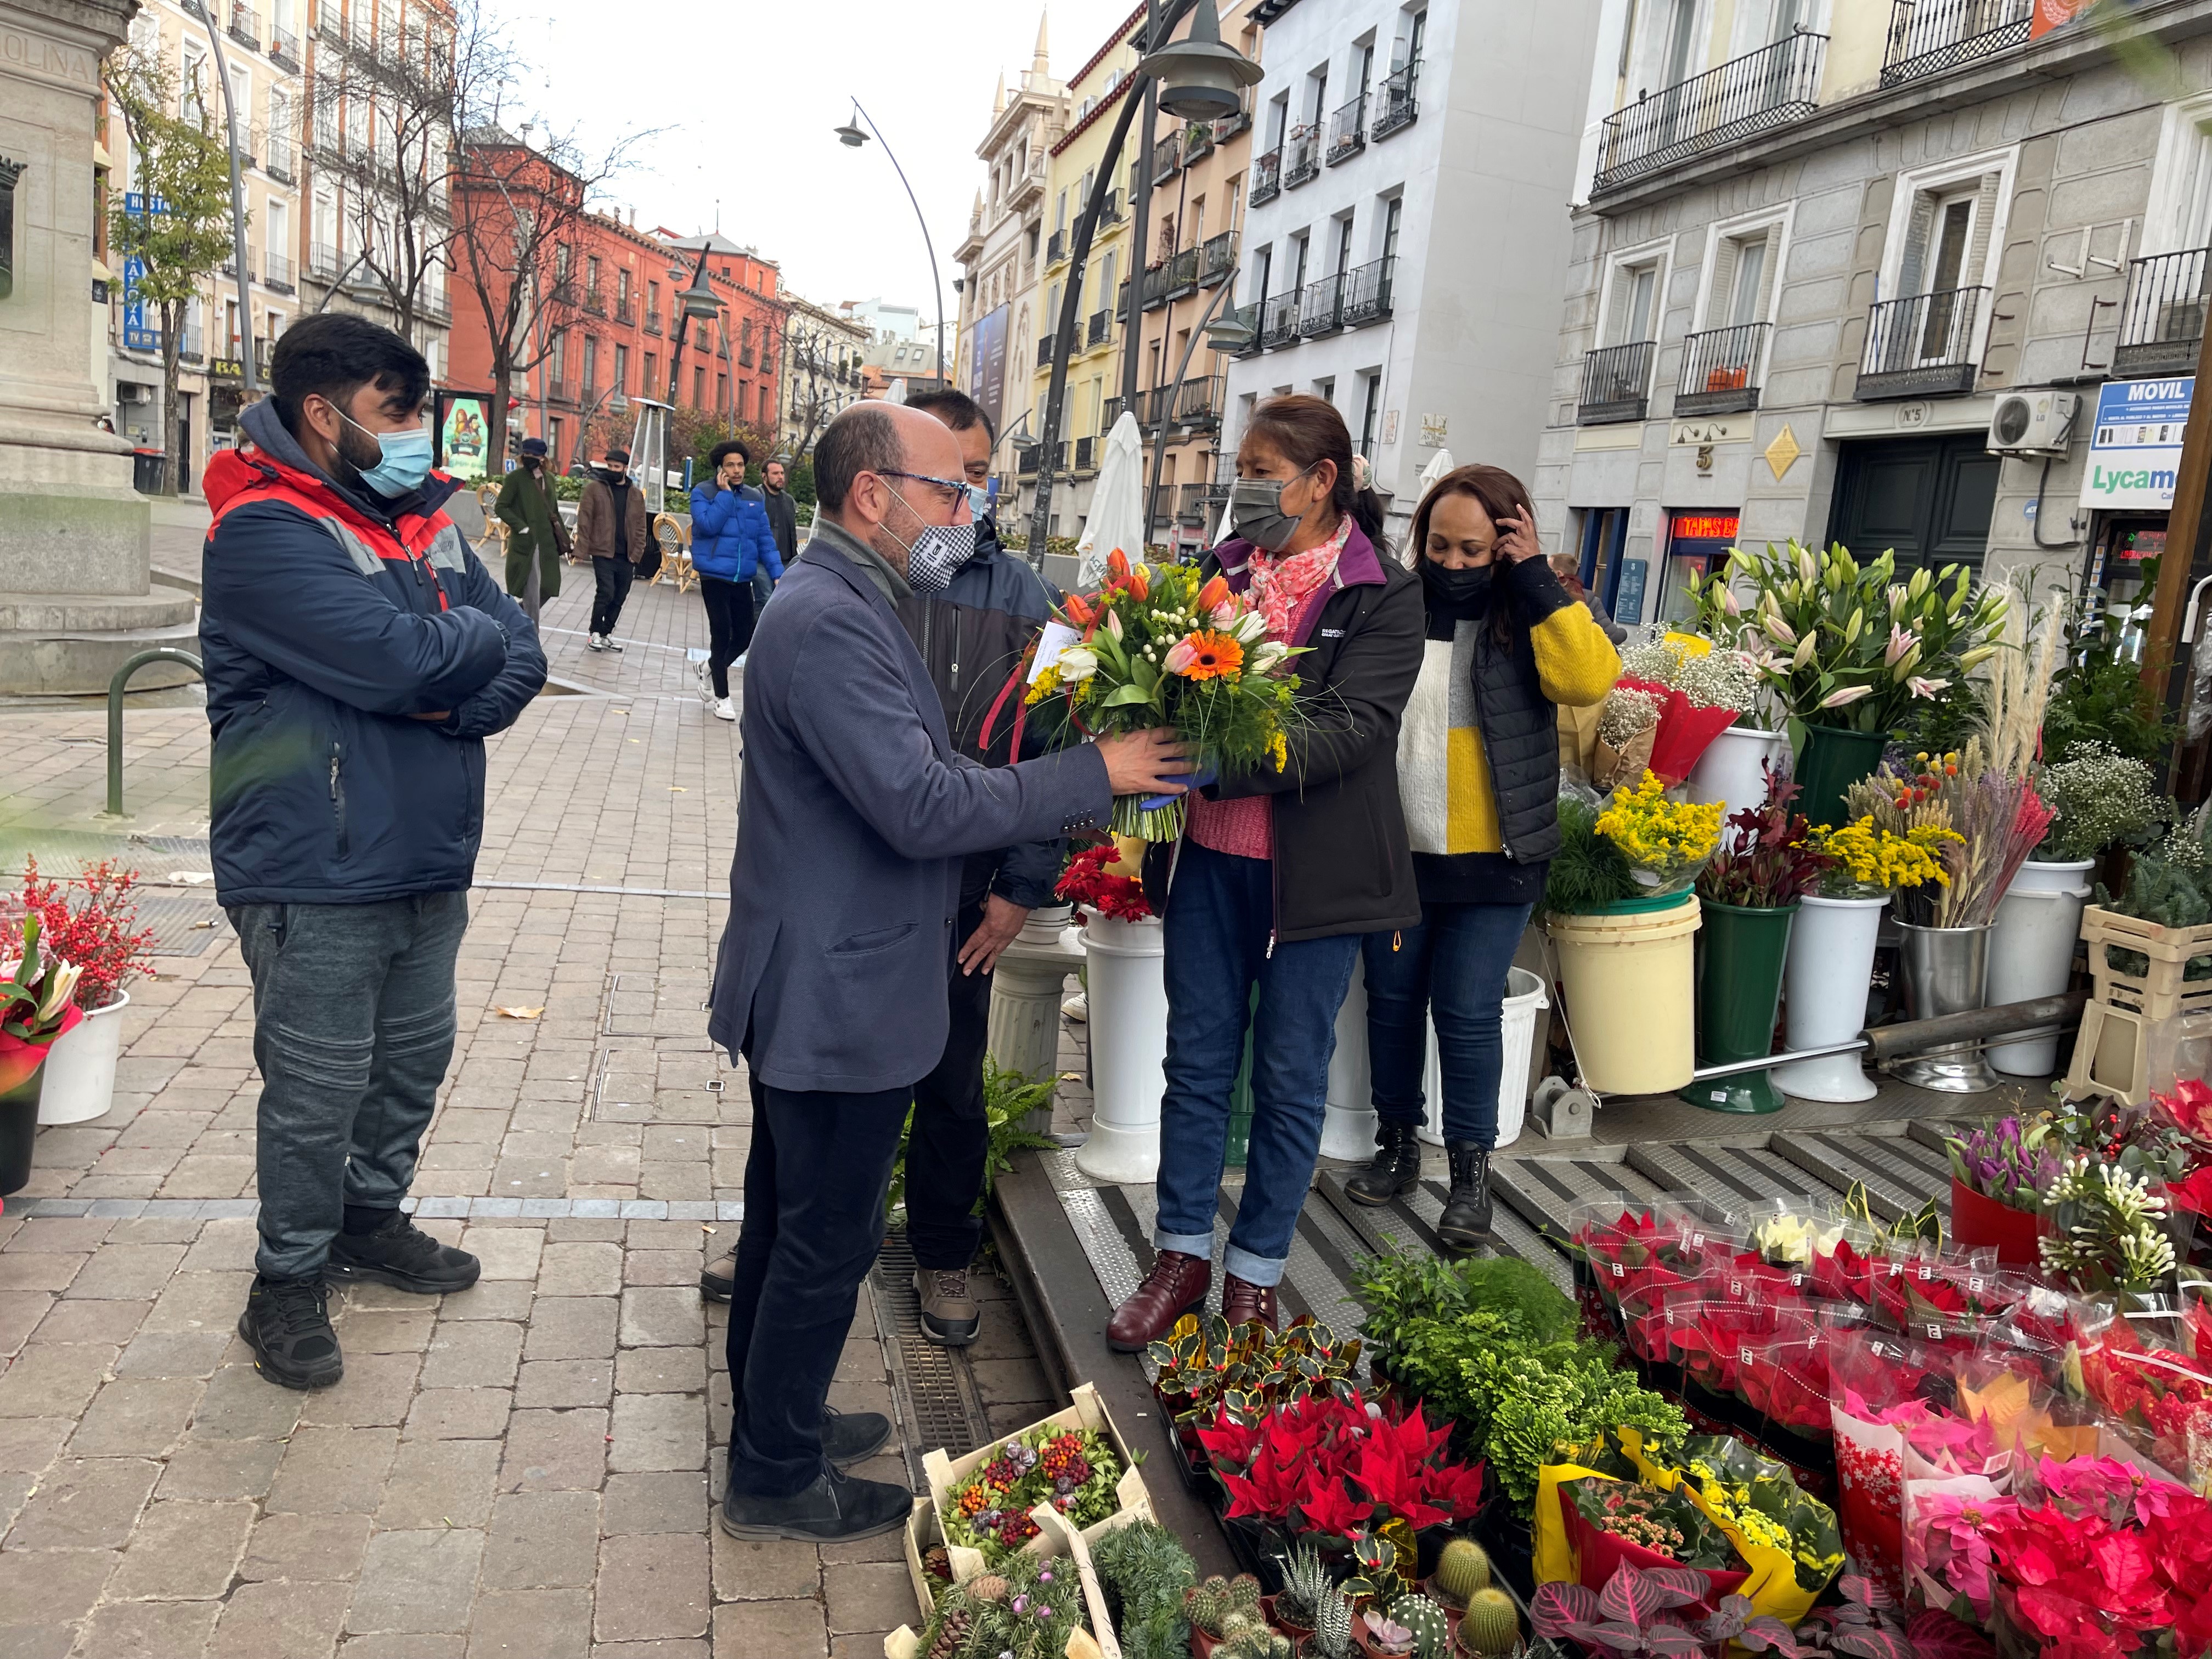 Los quioscos de flores de Tirso Molina, nueva imagen y seguridad jurídica para sus titulares - Ayuntamiento de Madrid